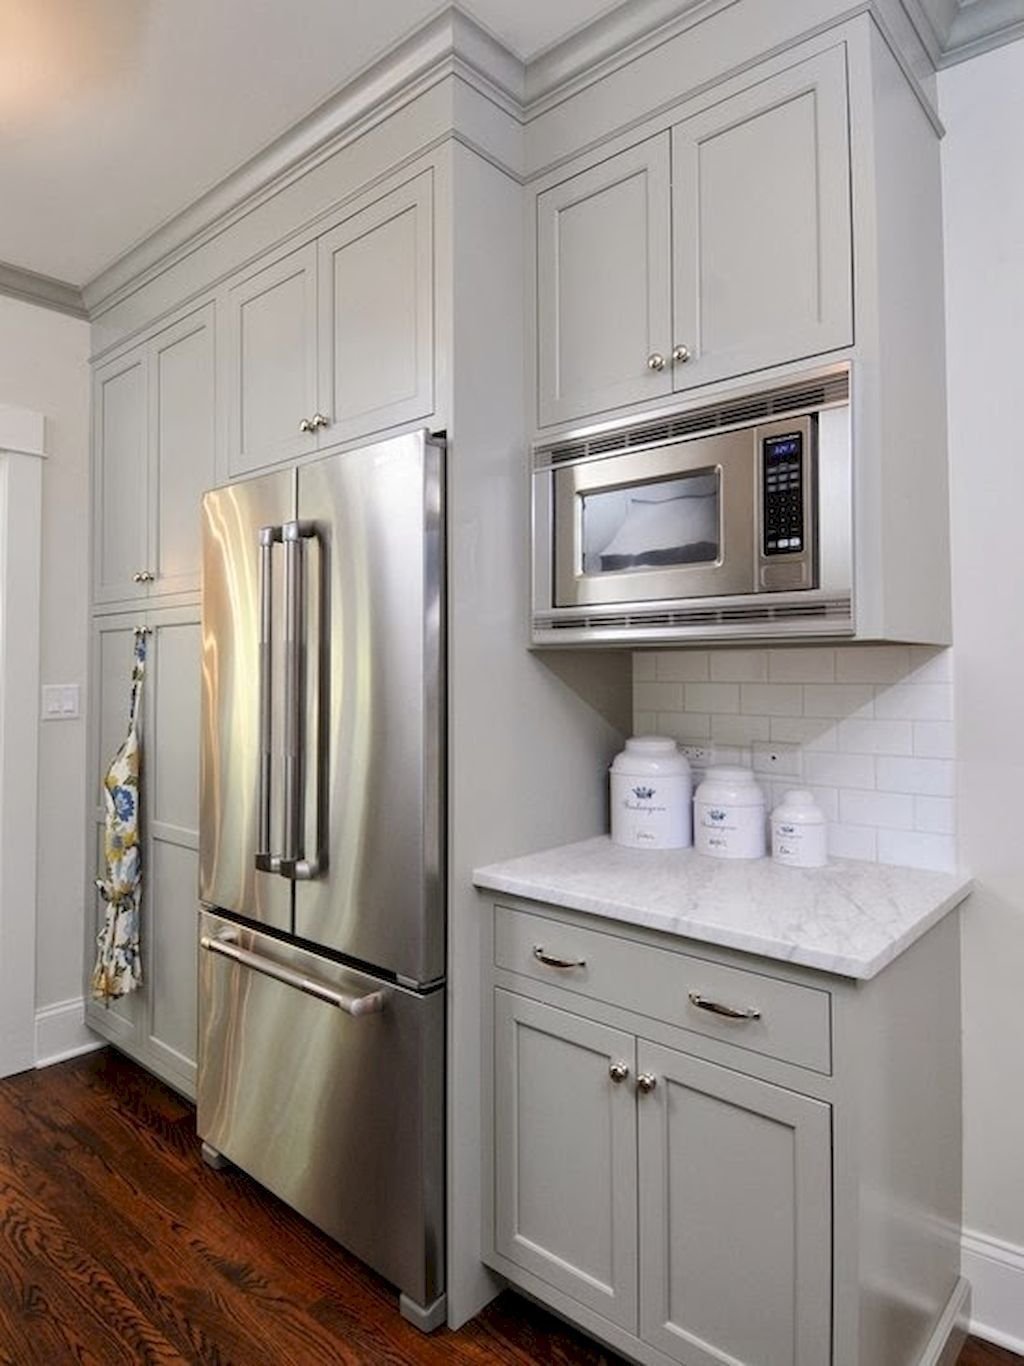 холодильник в пенале в кухне